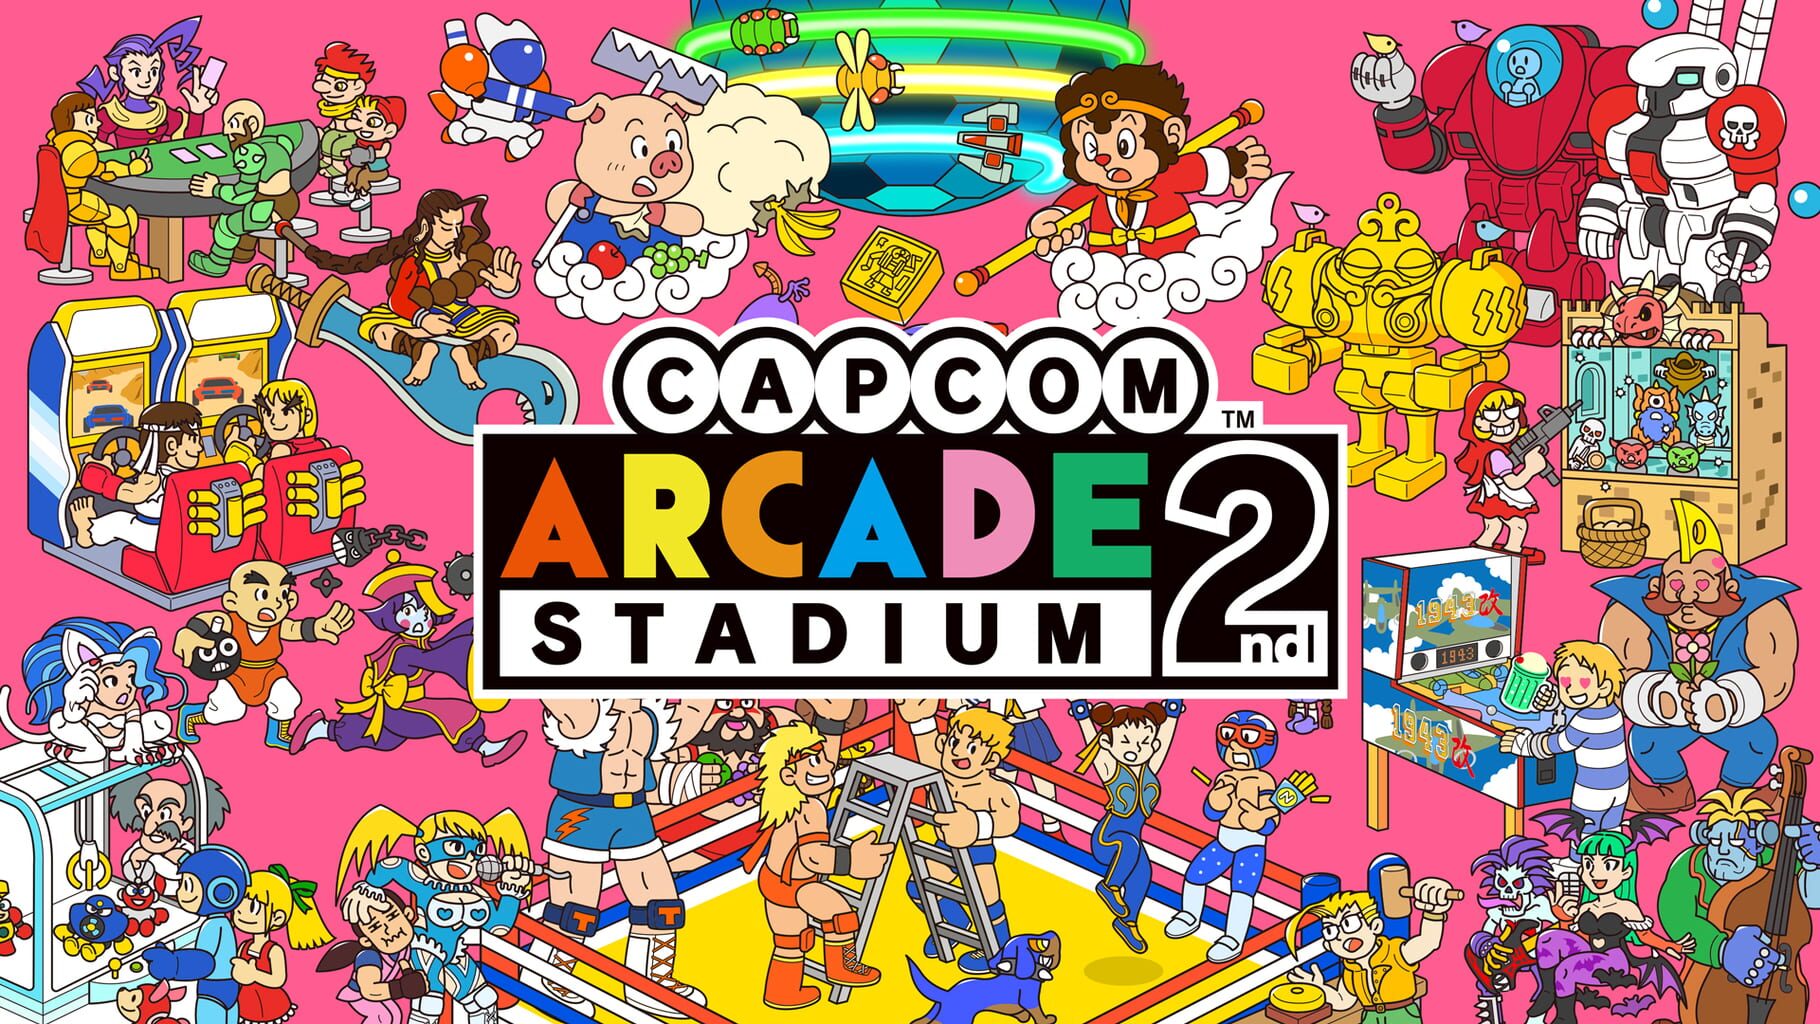 Capcom Arcade 2nd Stadium artwork